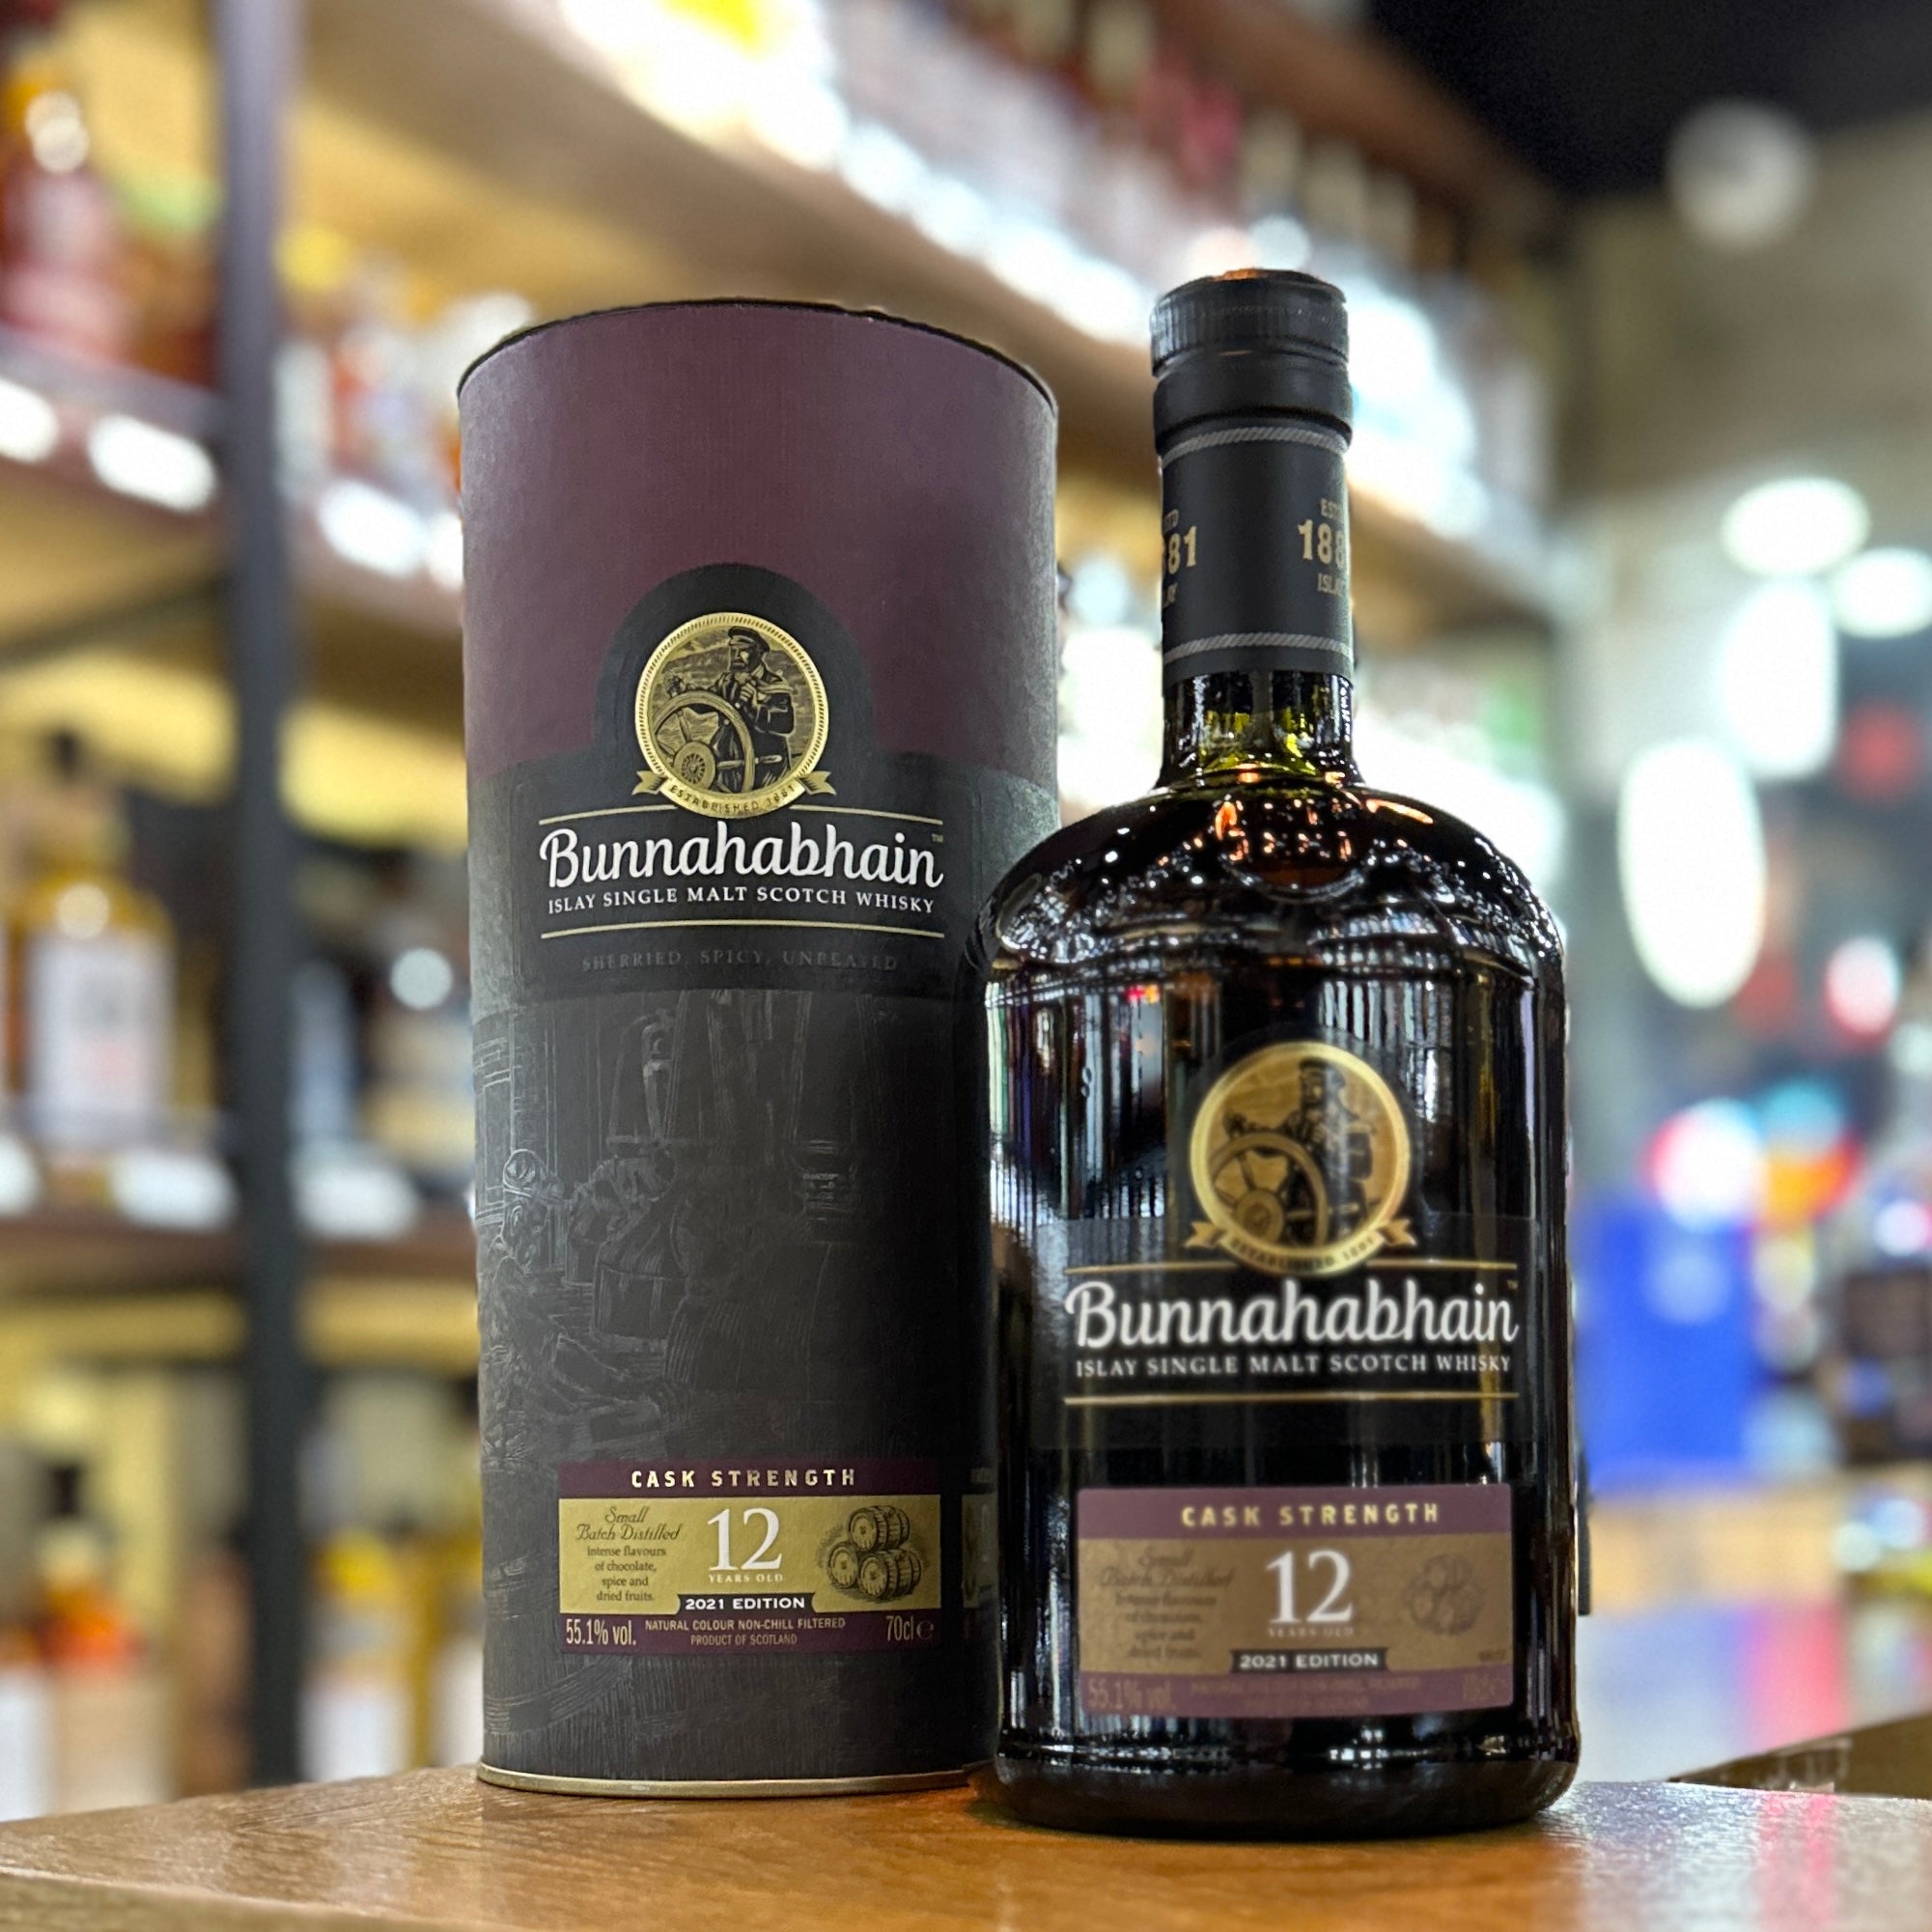 Bunnahabhain 12 Year Old Cask Strength Single Malt Scotch Whisky (2021 Edition)